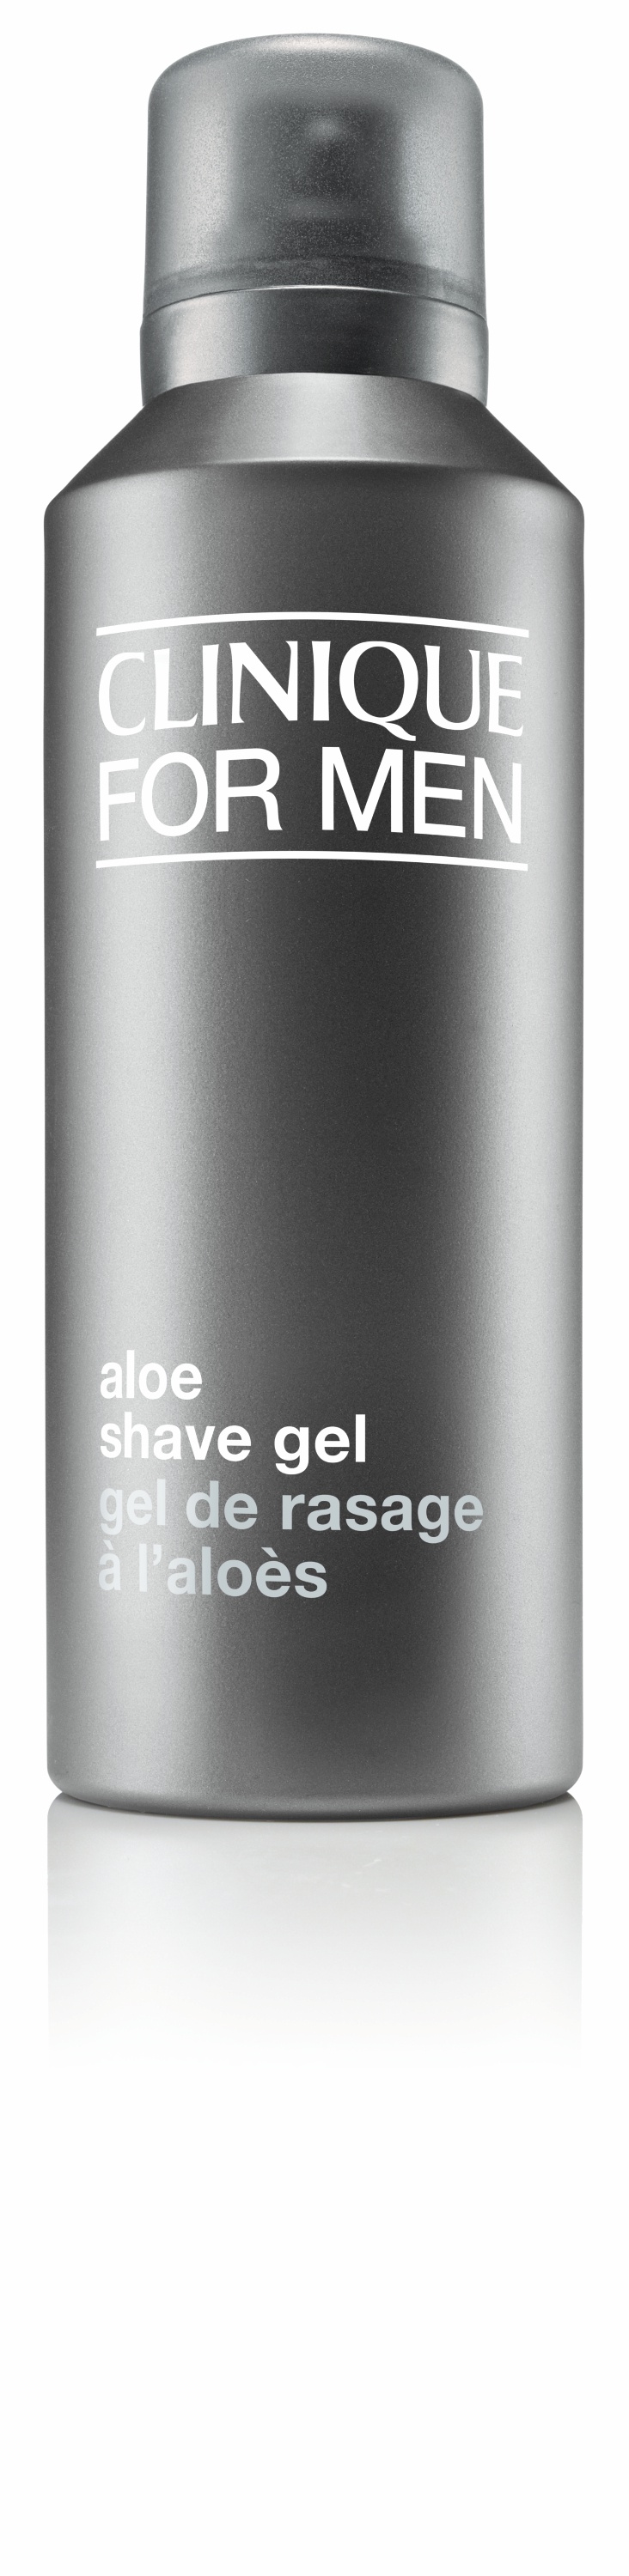 For Men Aloe Shave Gel